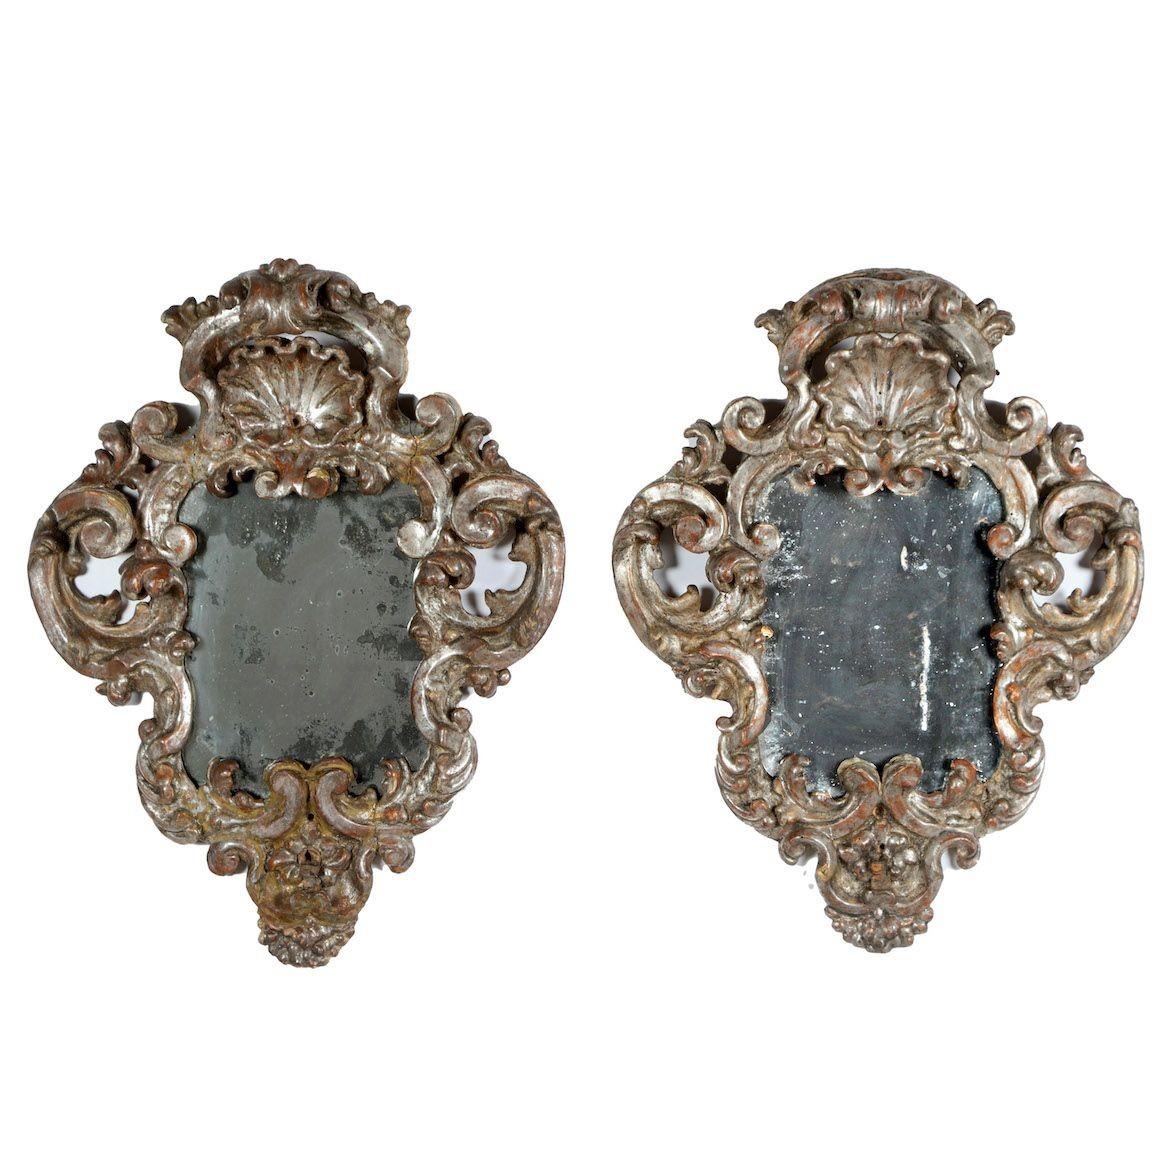 Exceptionnelle paire de miroirs baroques italiens avec feuilles d'argent et plaques de miroir d'origine. Richement sculpté, le cimier en relief est orné d'un motif de coquille et d'un motif de volute qui se prolonge autour de chaque miroir.